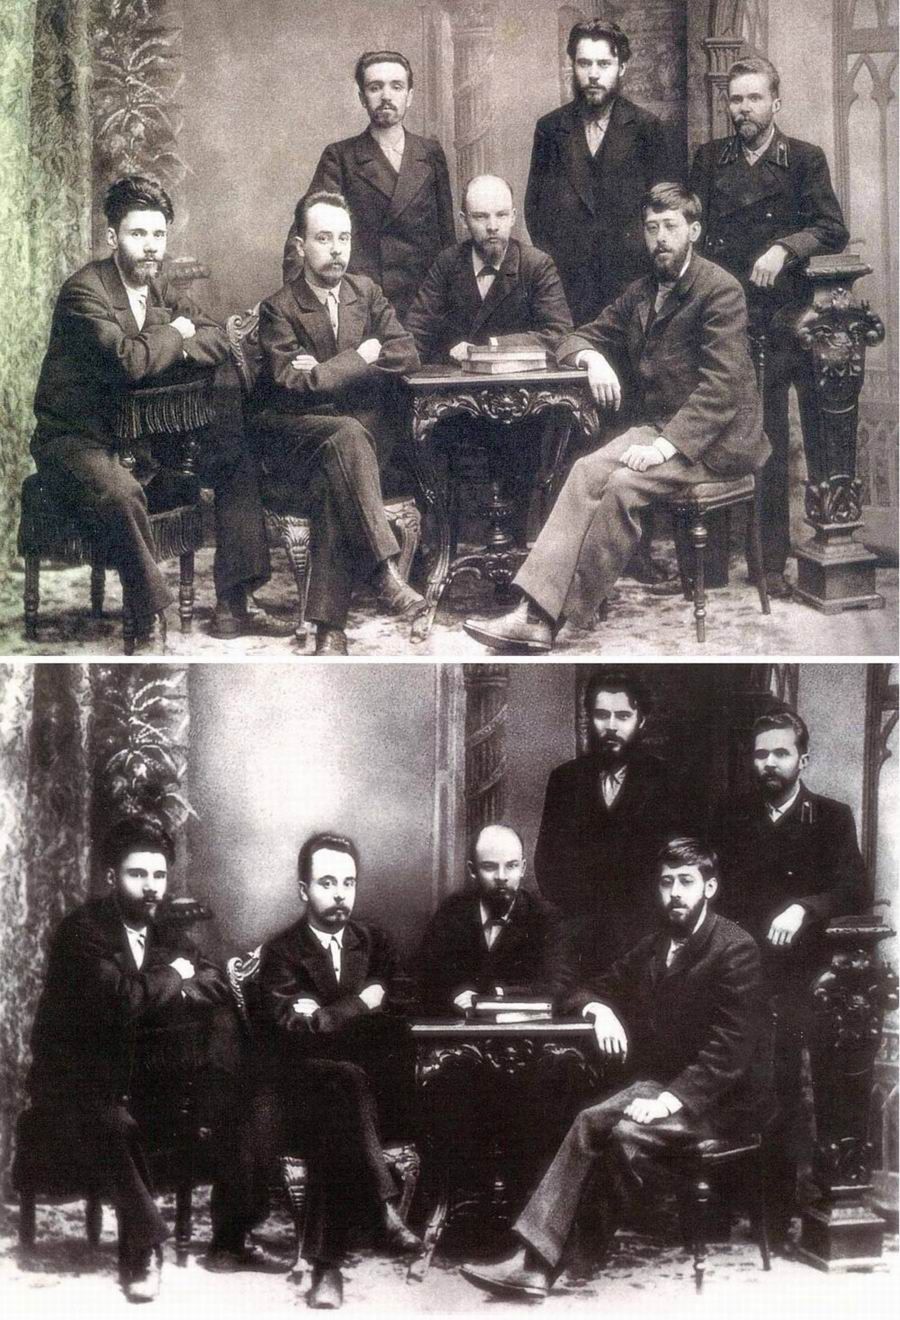 Na drugim zdjęciu brakuje Malczenki. W 1929 r. aresztowano go z powodu działalności kontrrewolucyjnej.